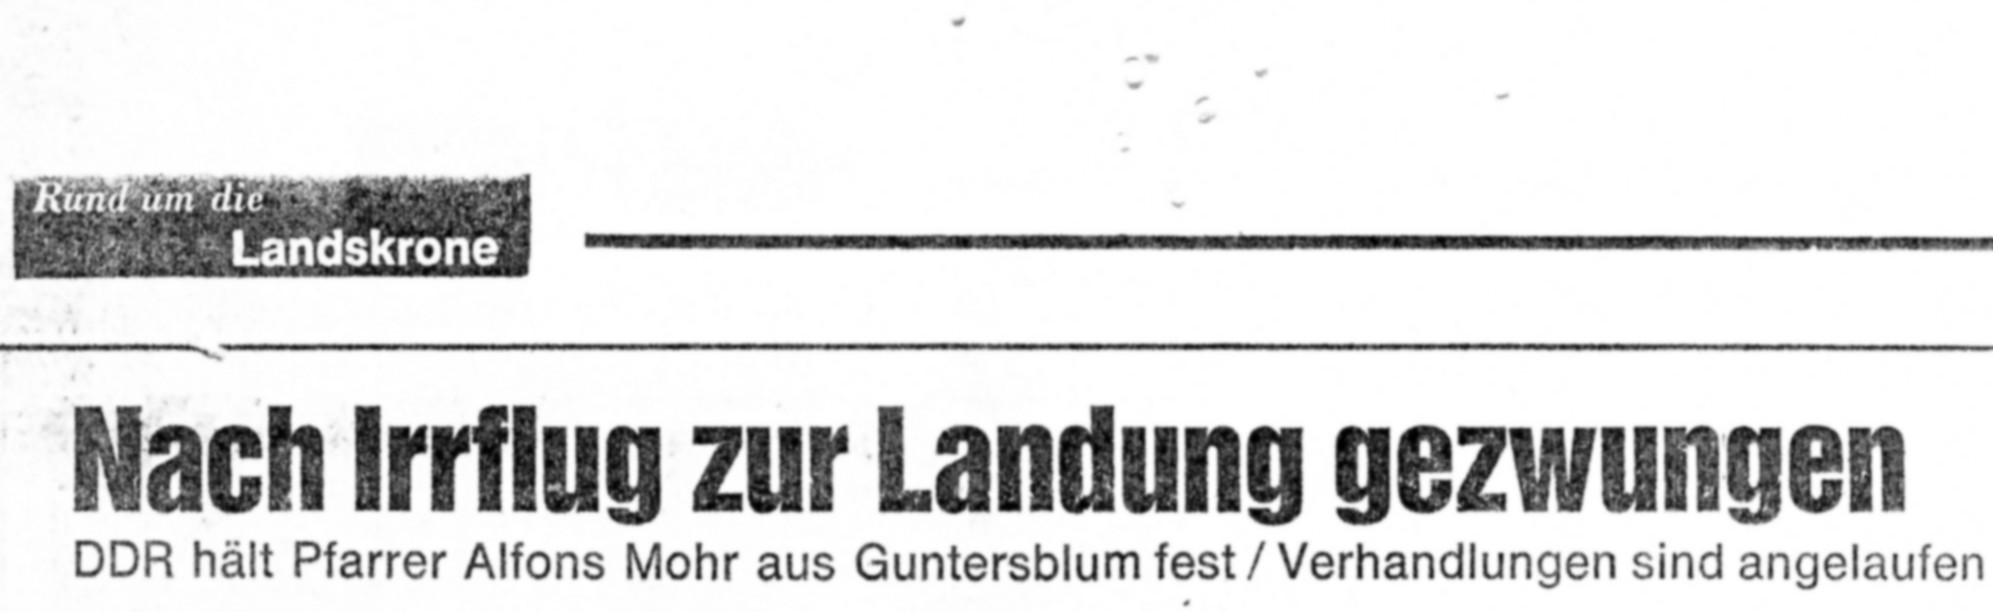 Fliegender Pfarrer landete in DDR (Kulturverein Guntersblum CC BY-NC-SA)